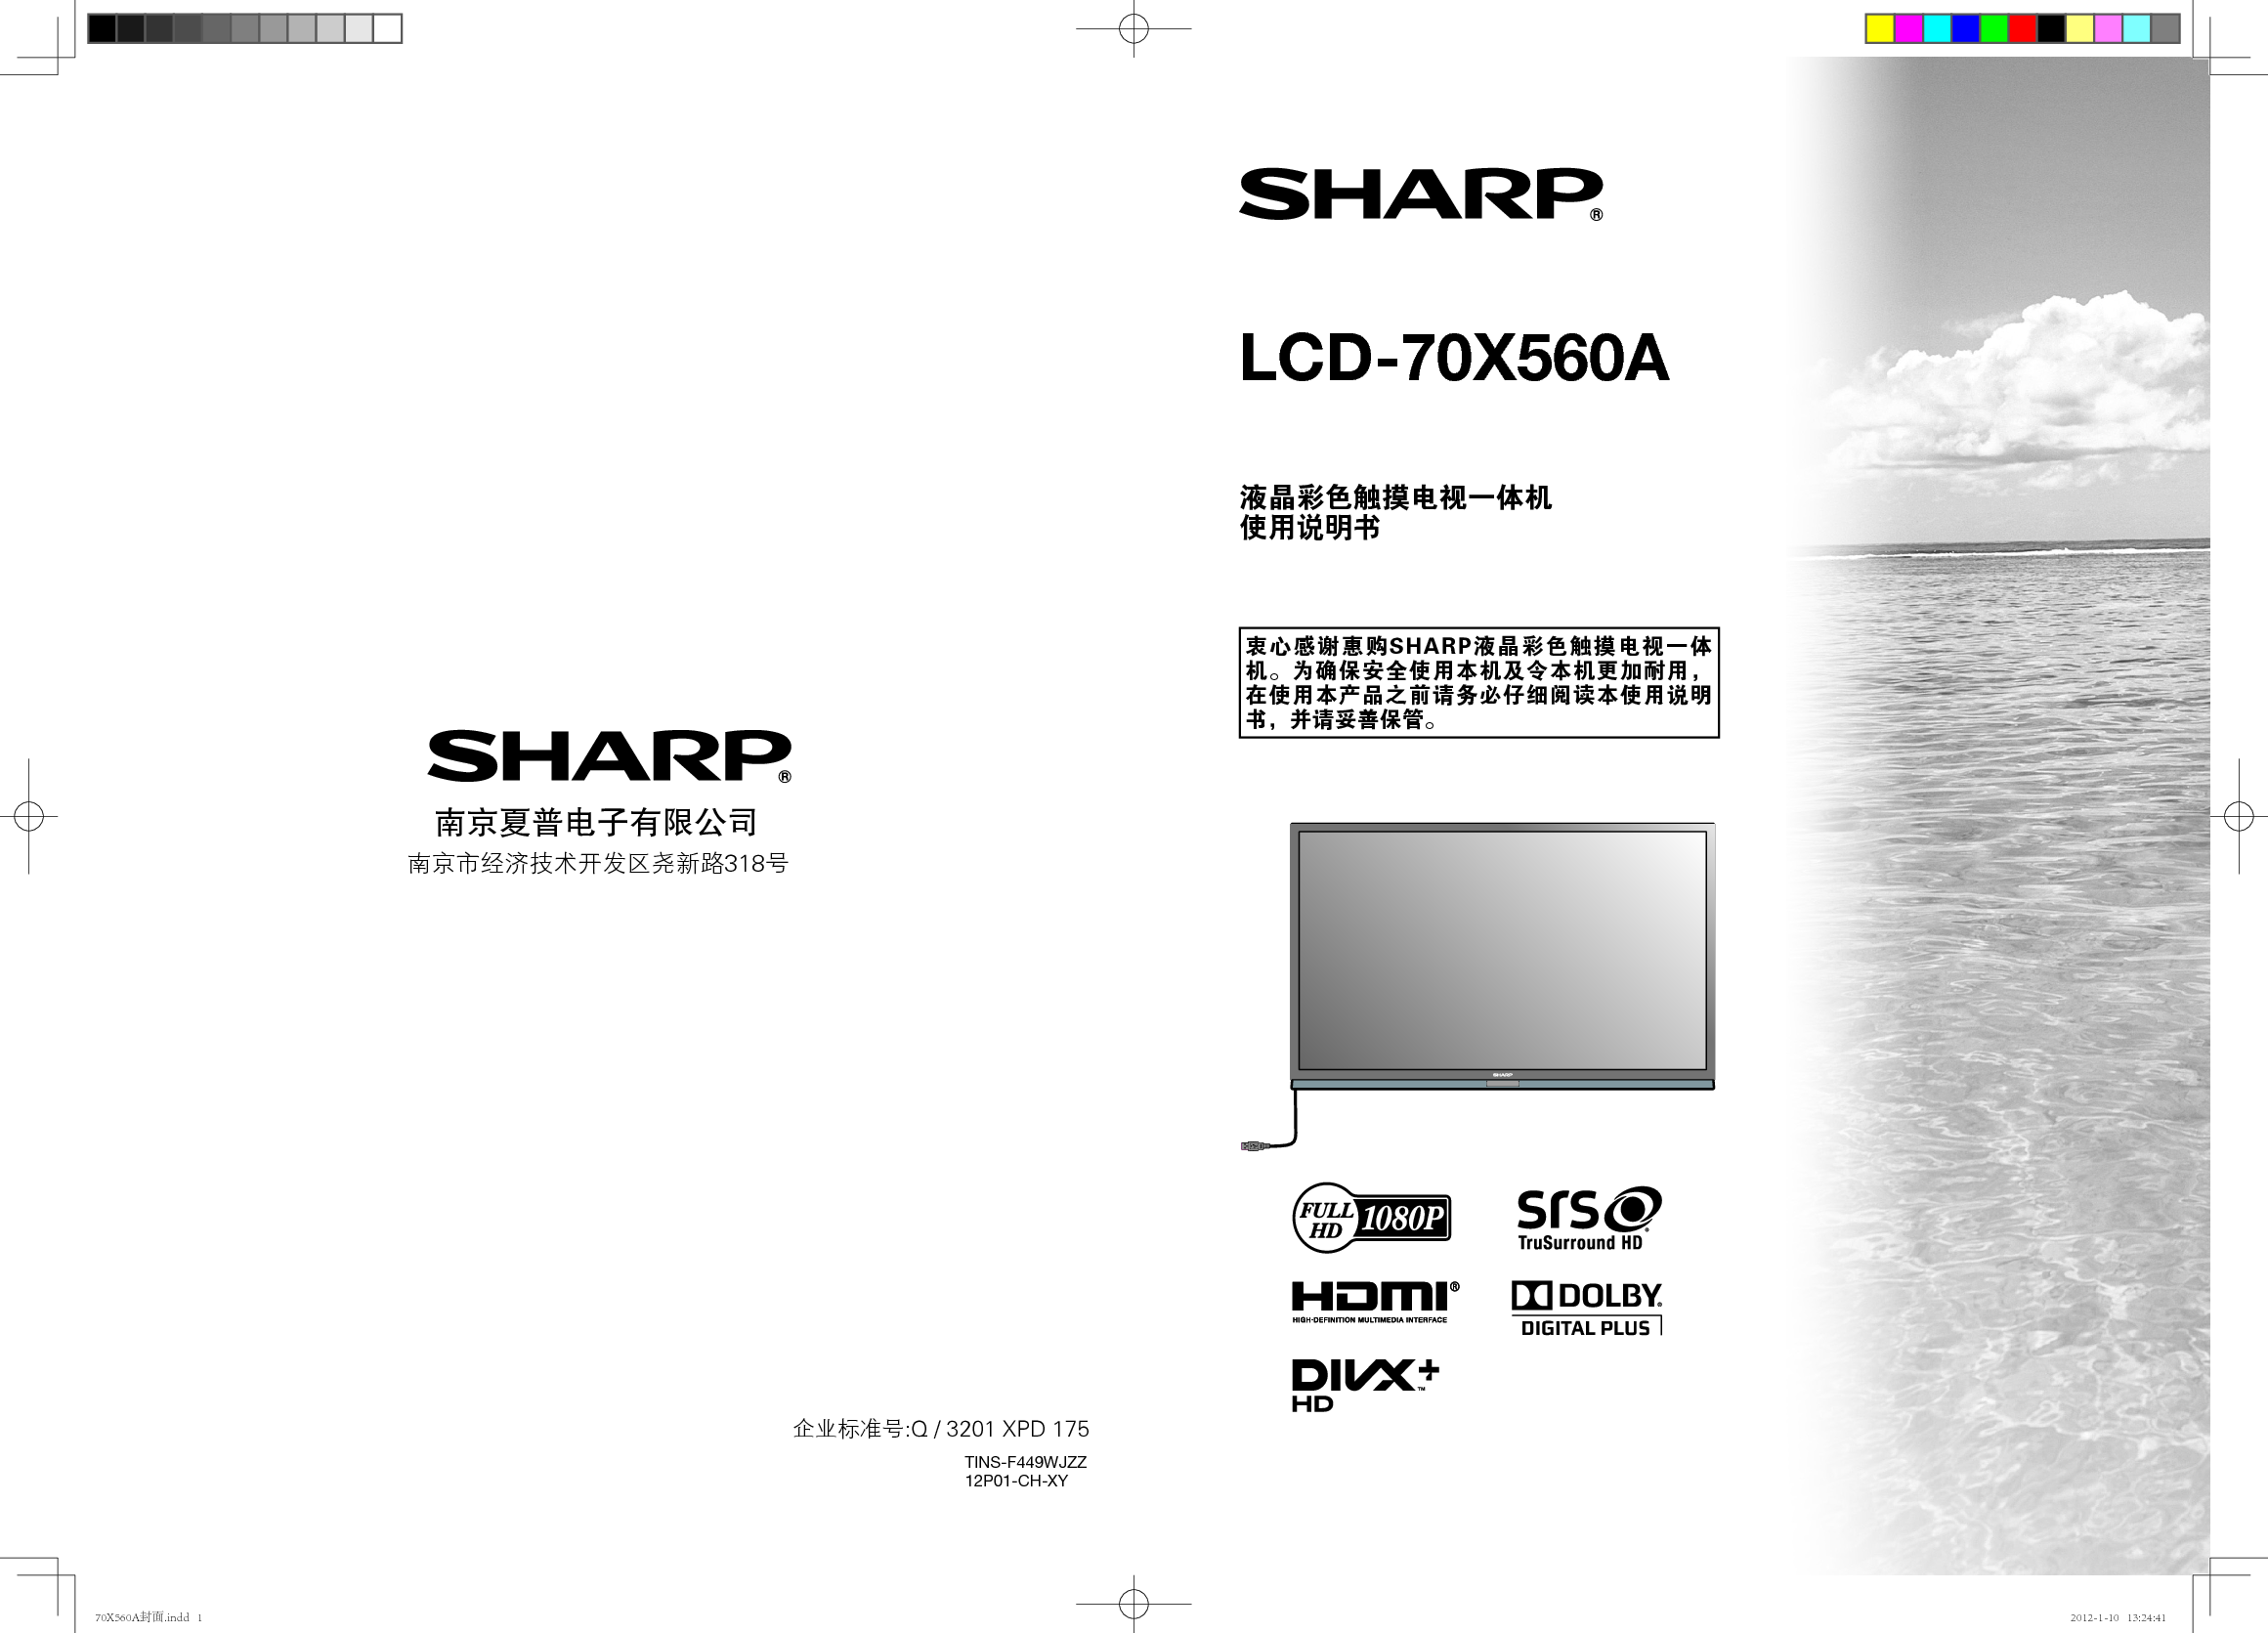 夏普 Sharp LCD-70X560A 使用说明书 封面